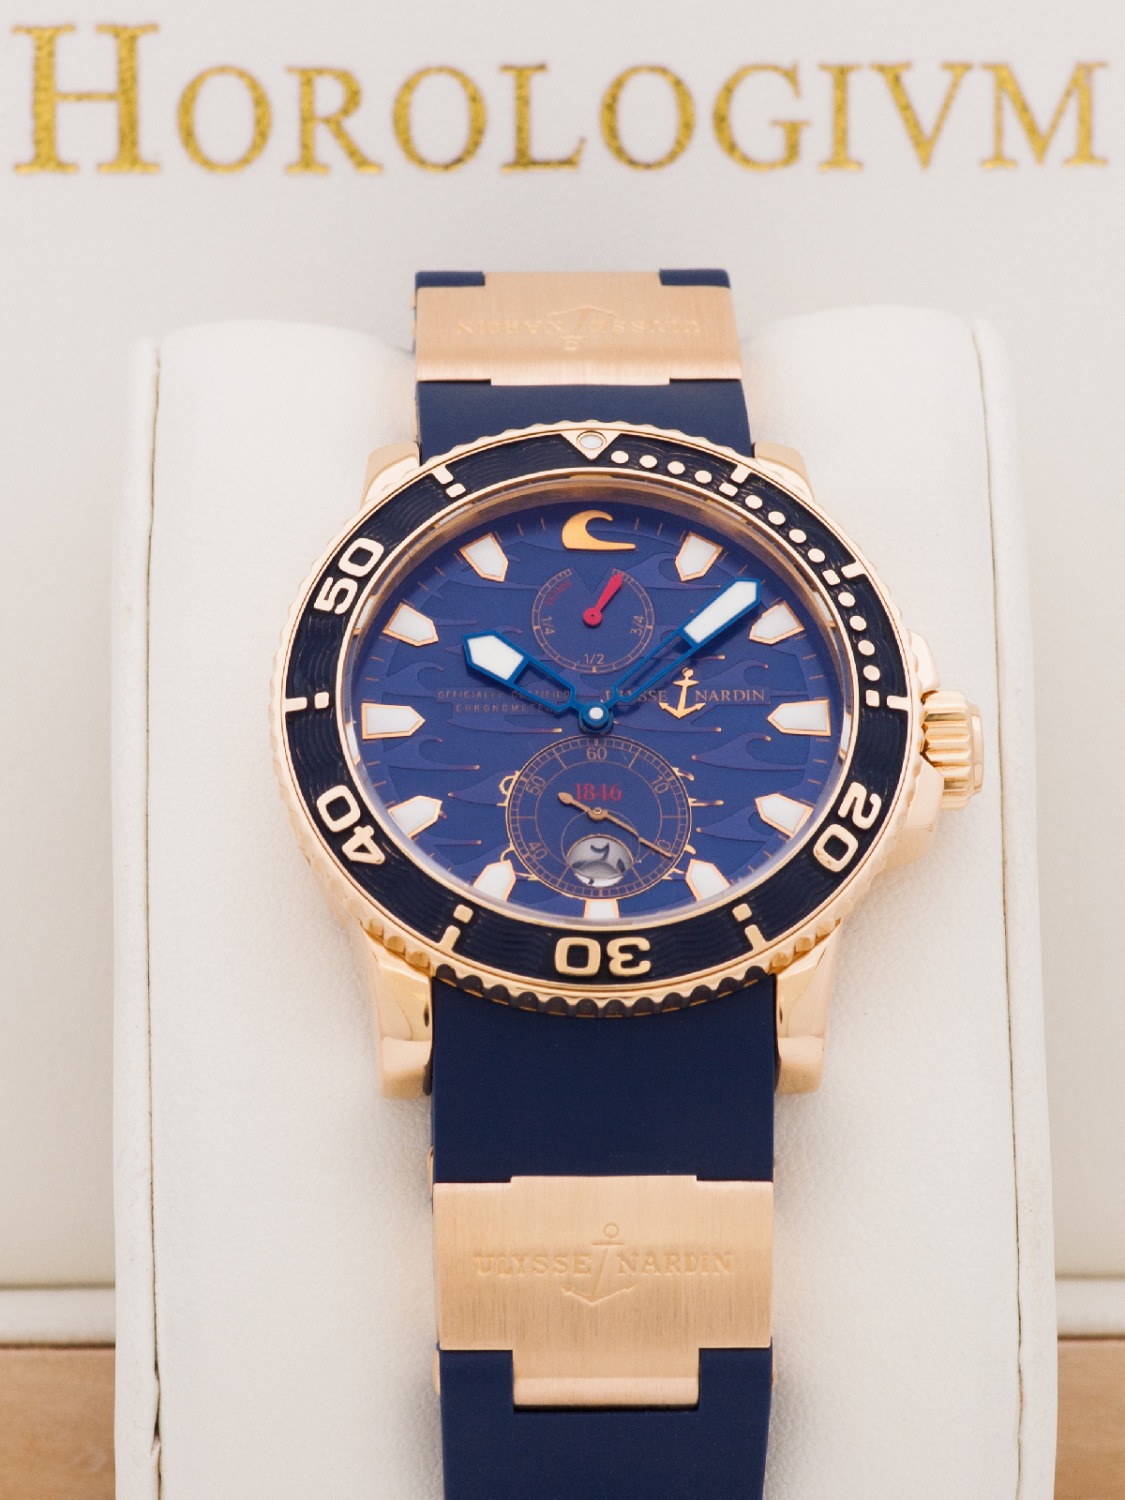 Ulysse Nardin Maxi Marine Diver Blue Surf Limited 500 pcs watch, rose gold